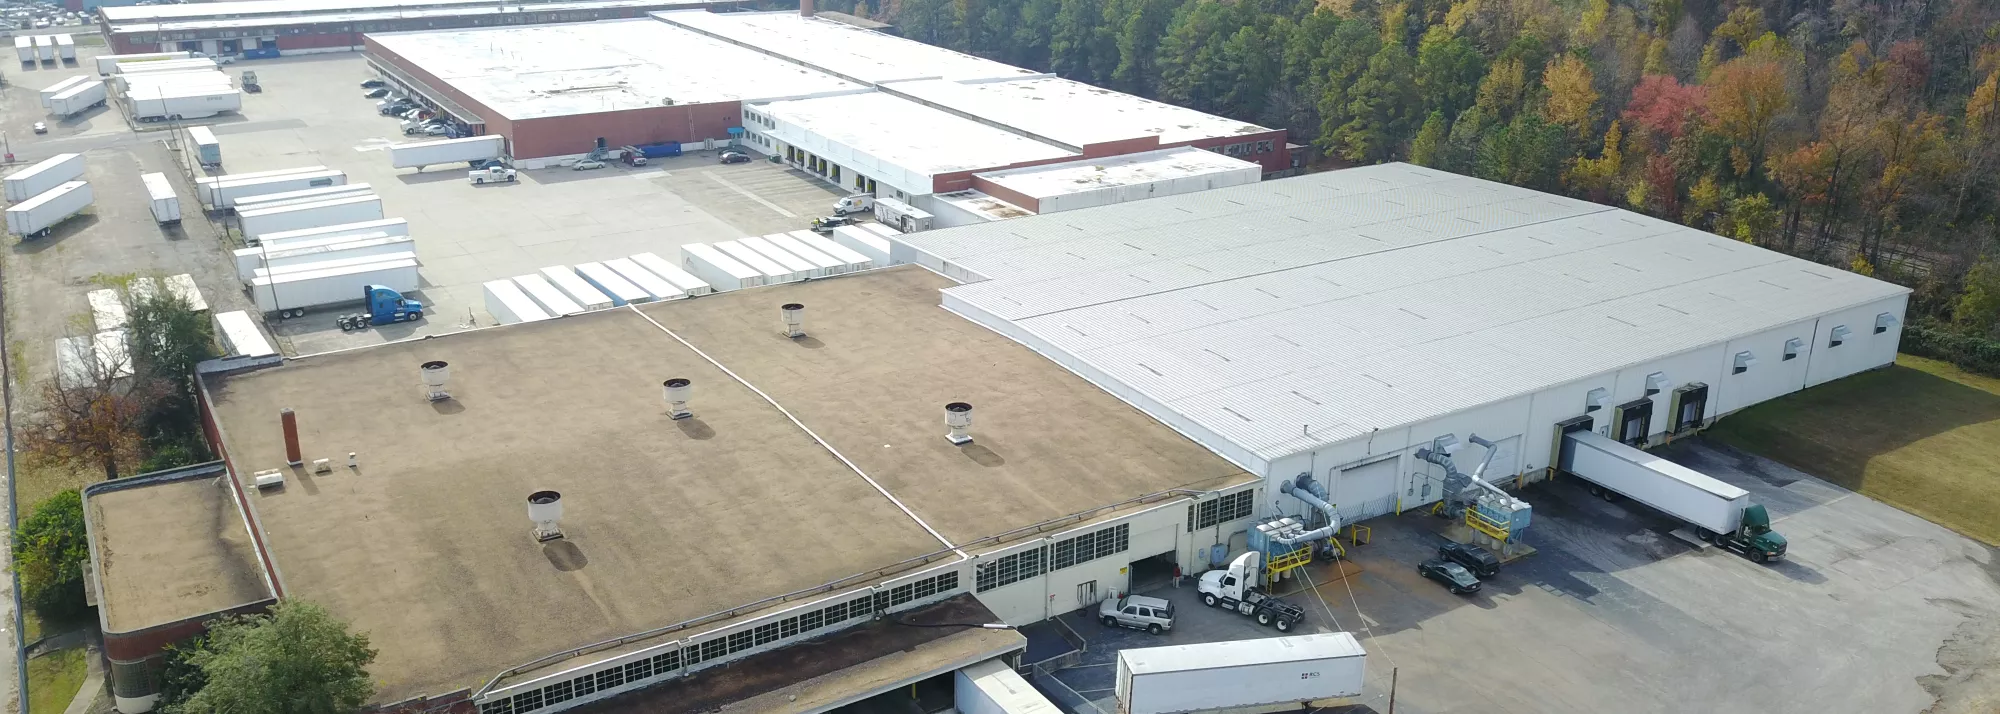 Drone photo of Lineage's Sandston - SEFF facility